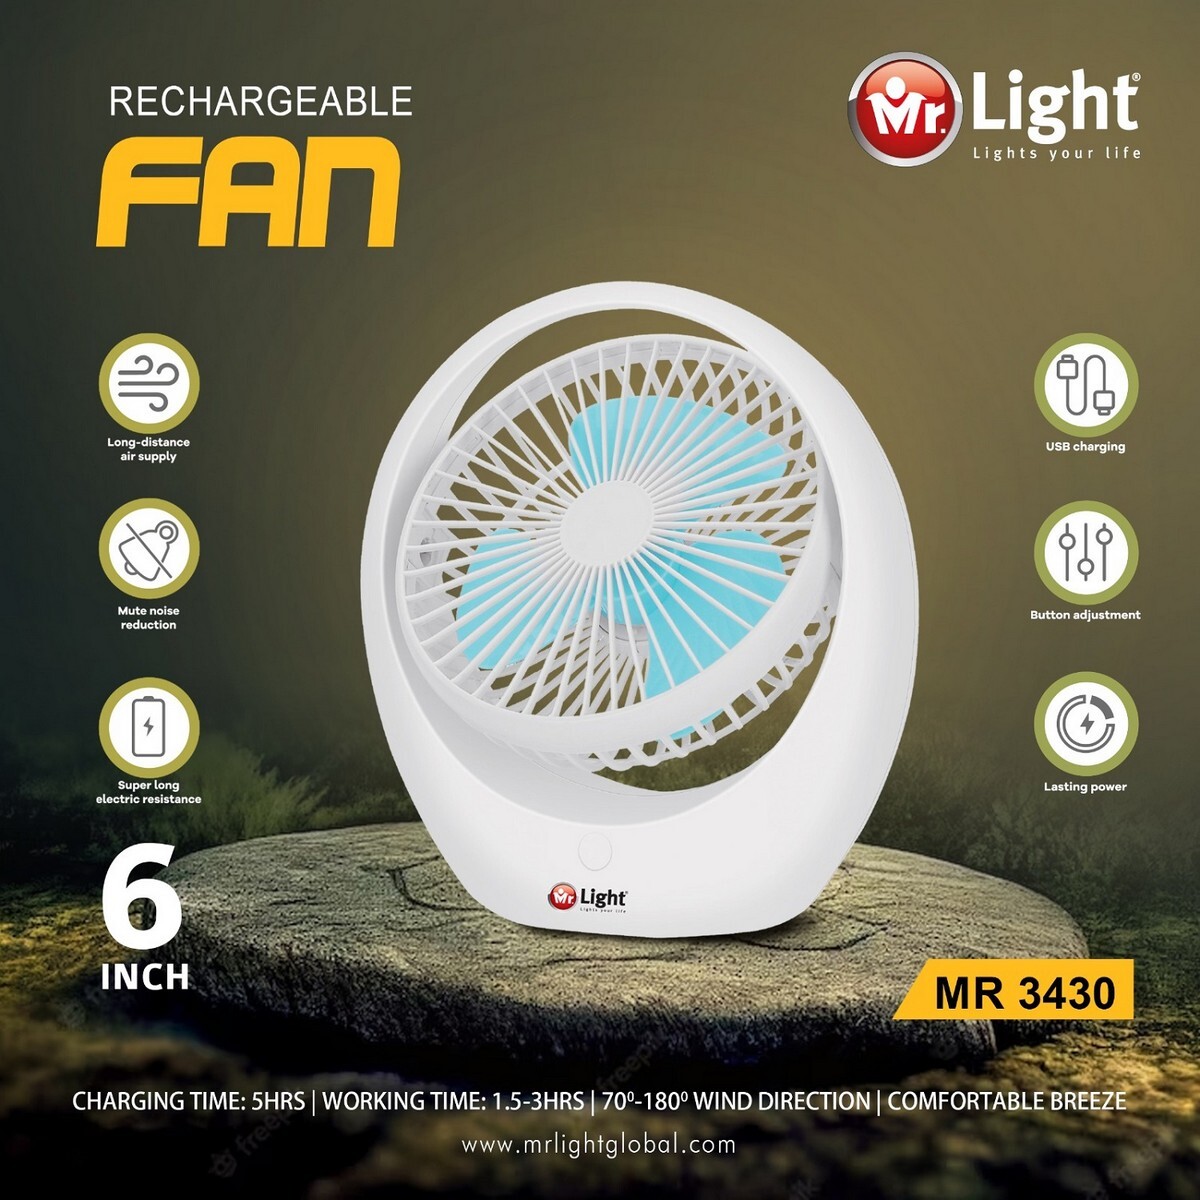 Mr Light Rechargeable Fan MR 3430